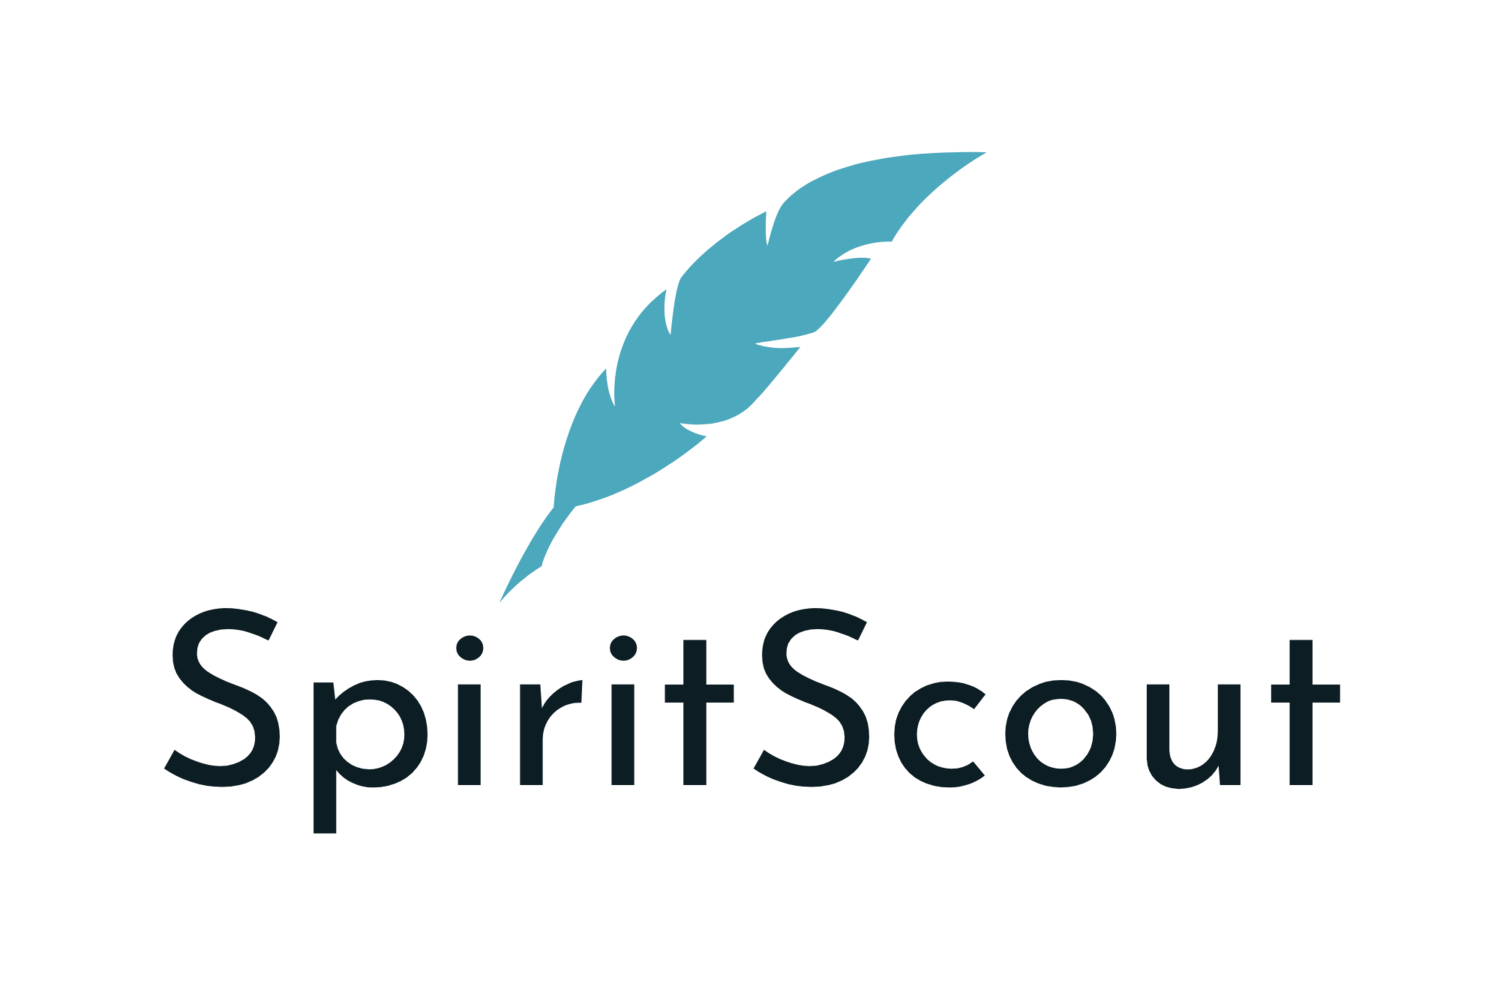 SpiritScout